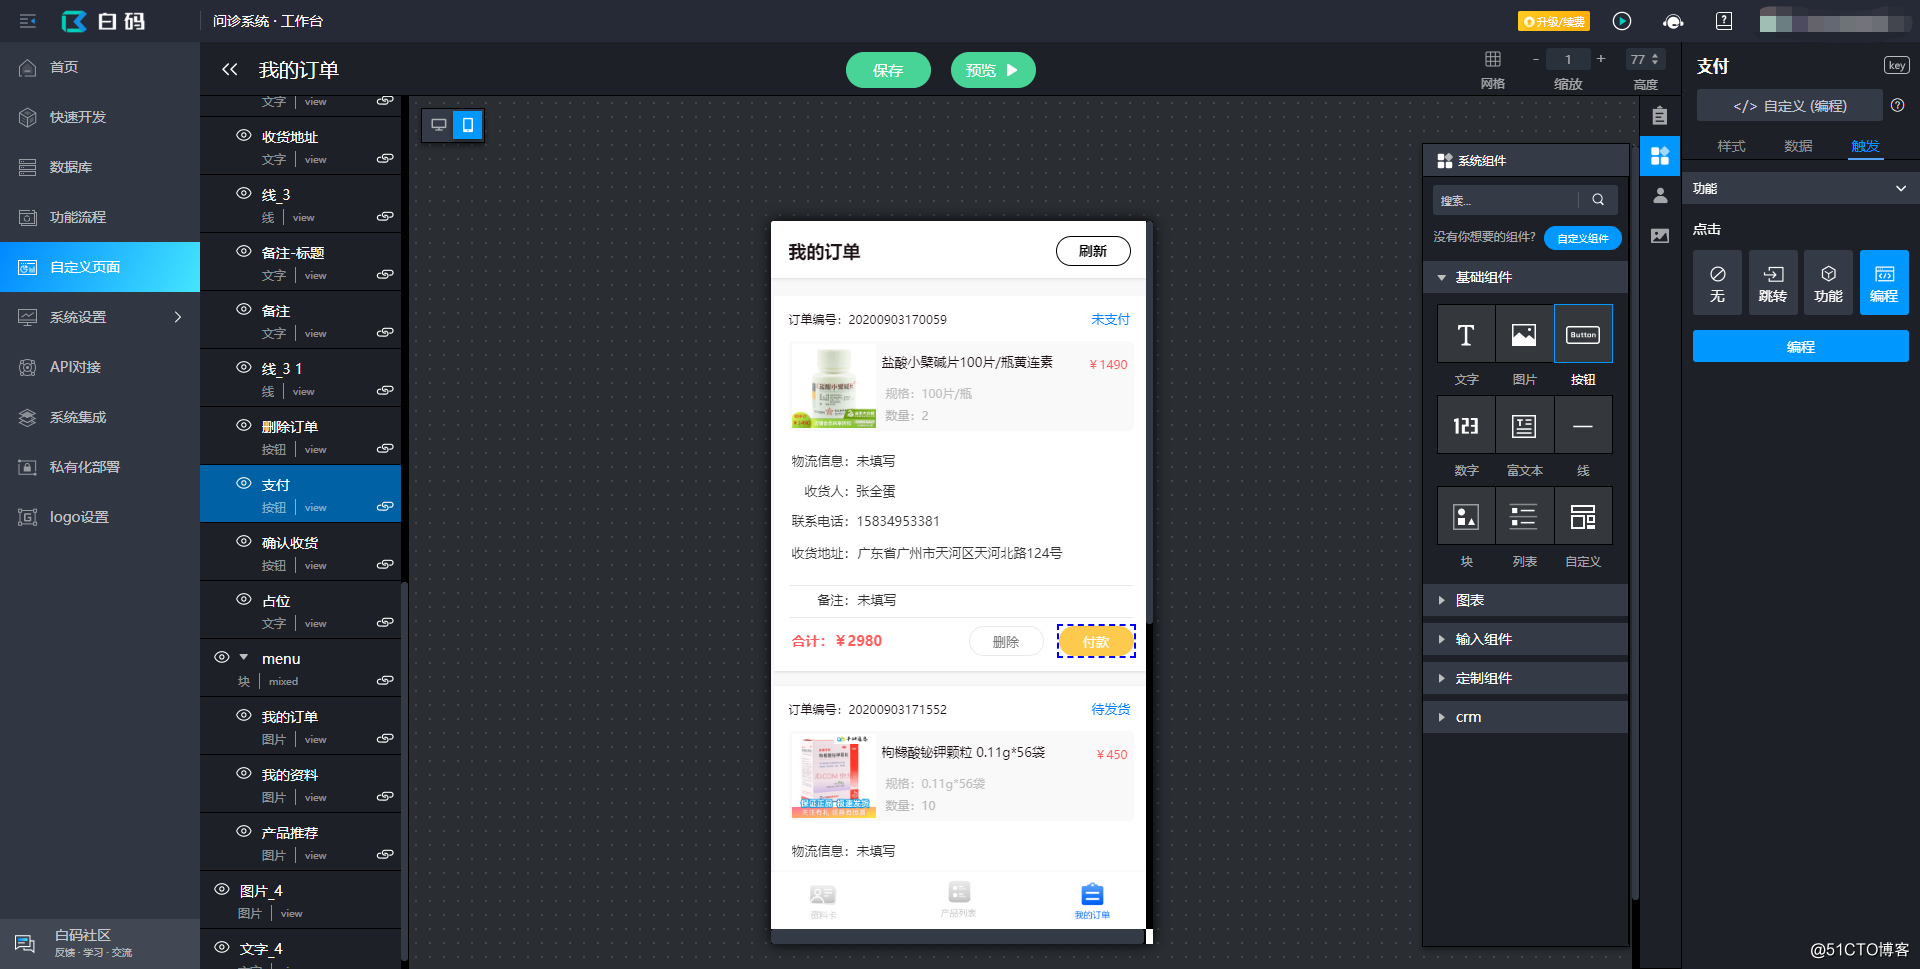 Desarrollo de código bajo, acoplamiento rápido con pago WeChat